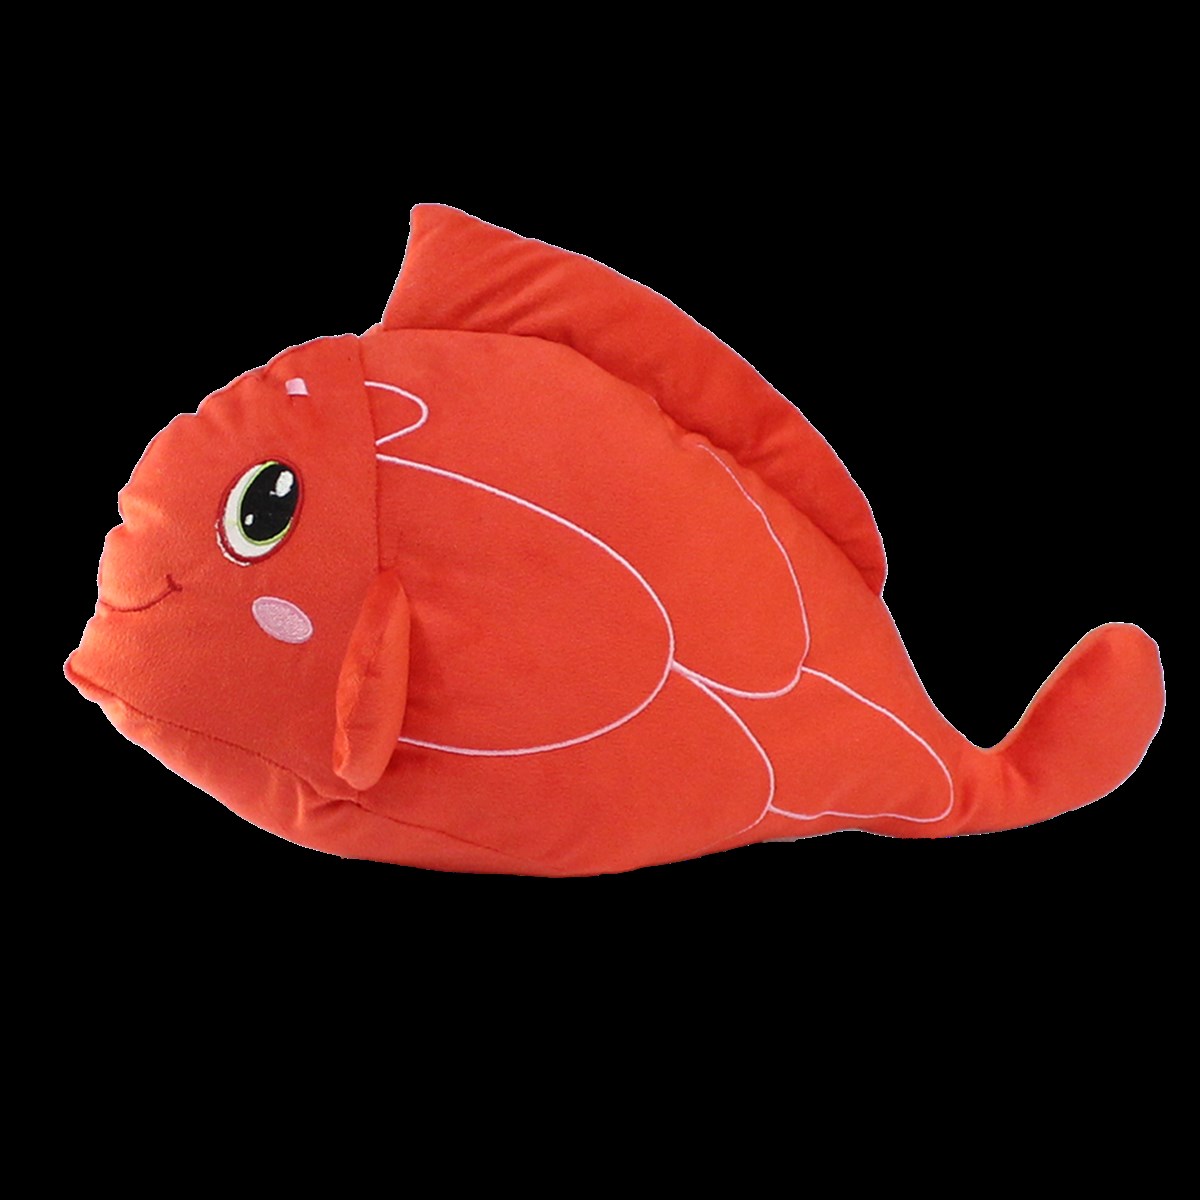 Sesli Kırmızı Balık Peluş Oyuncak 40 cm, Alışverişin Adresi'nde | Shopiglo